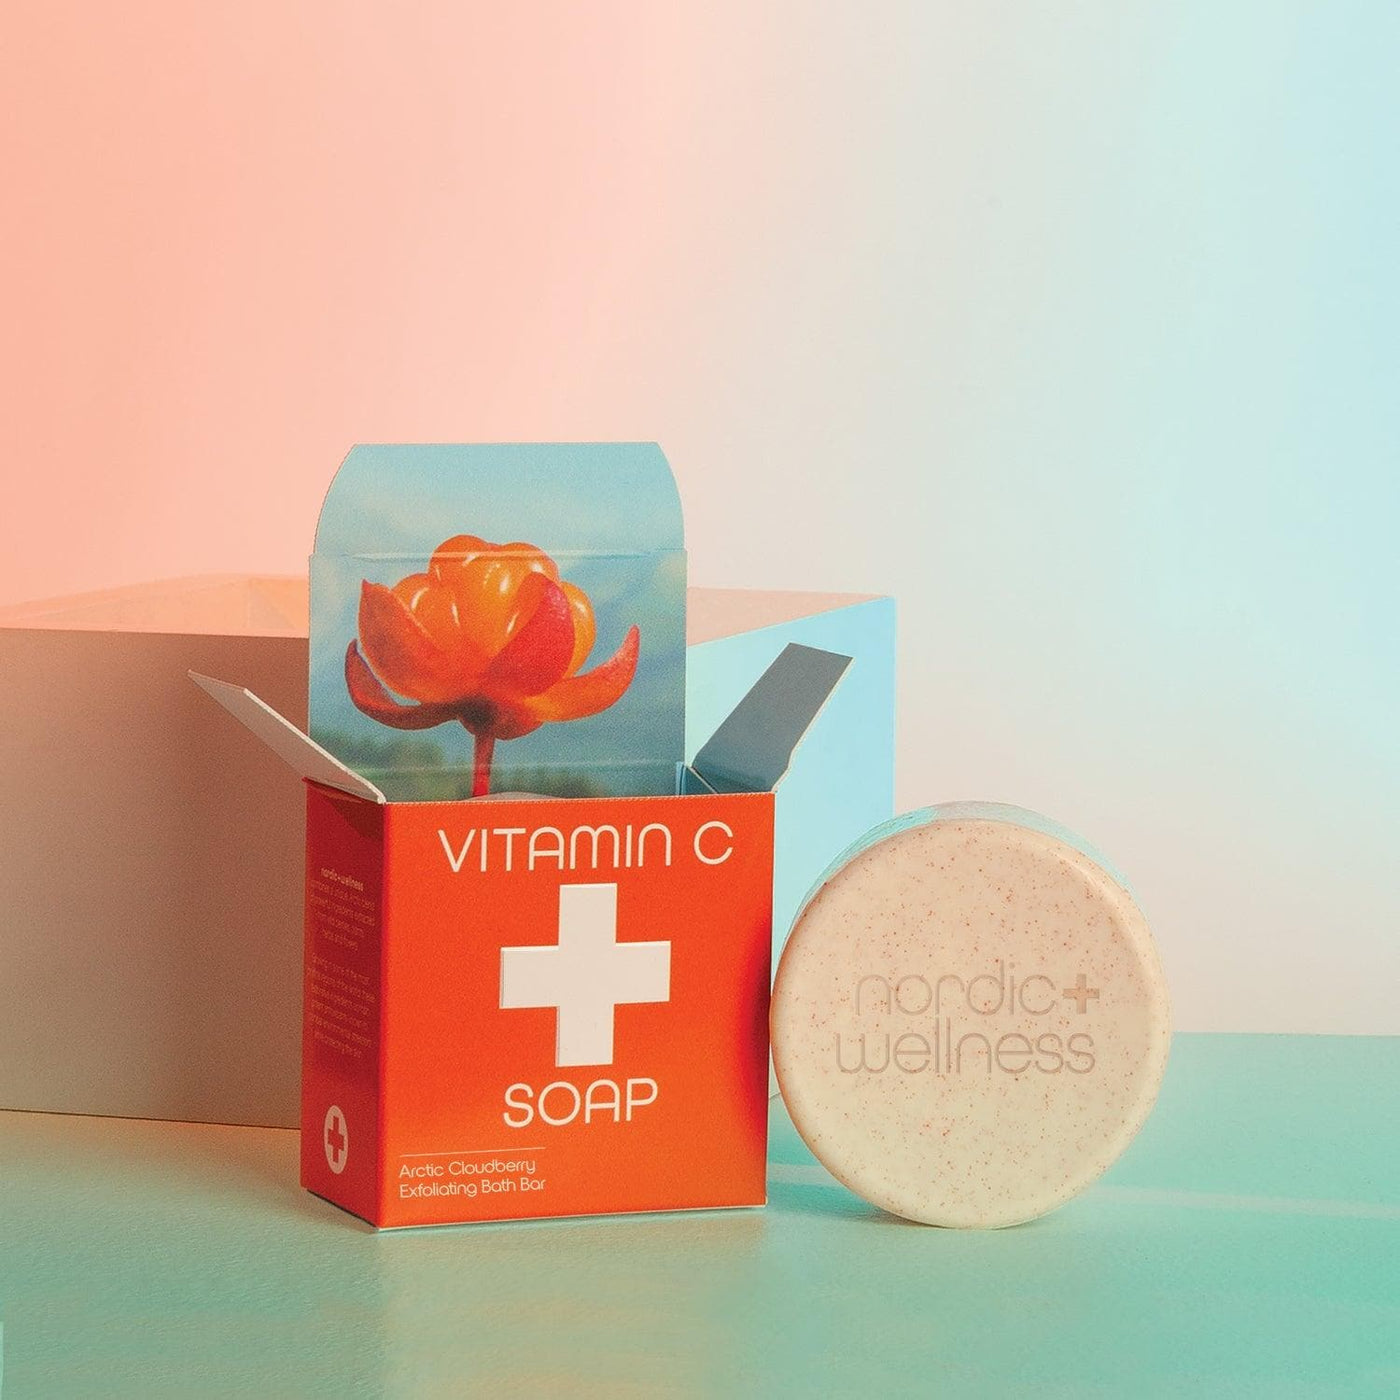 Nordic+Wellness Vitamin C Soap - Giften Market